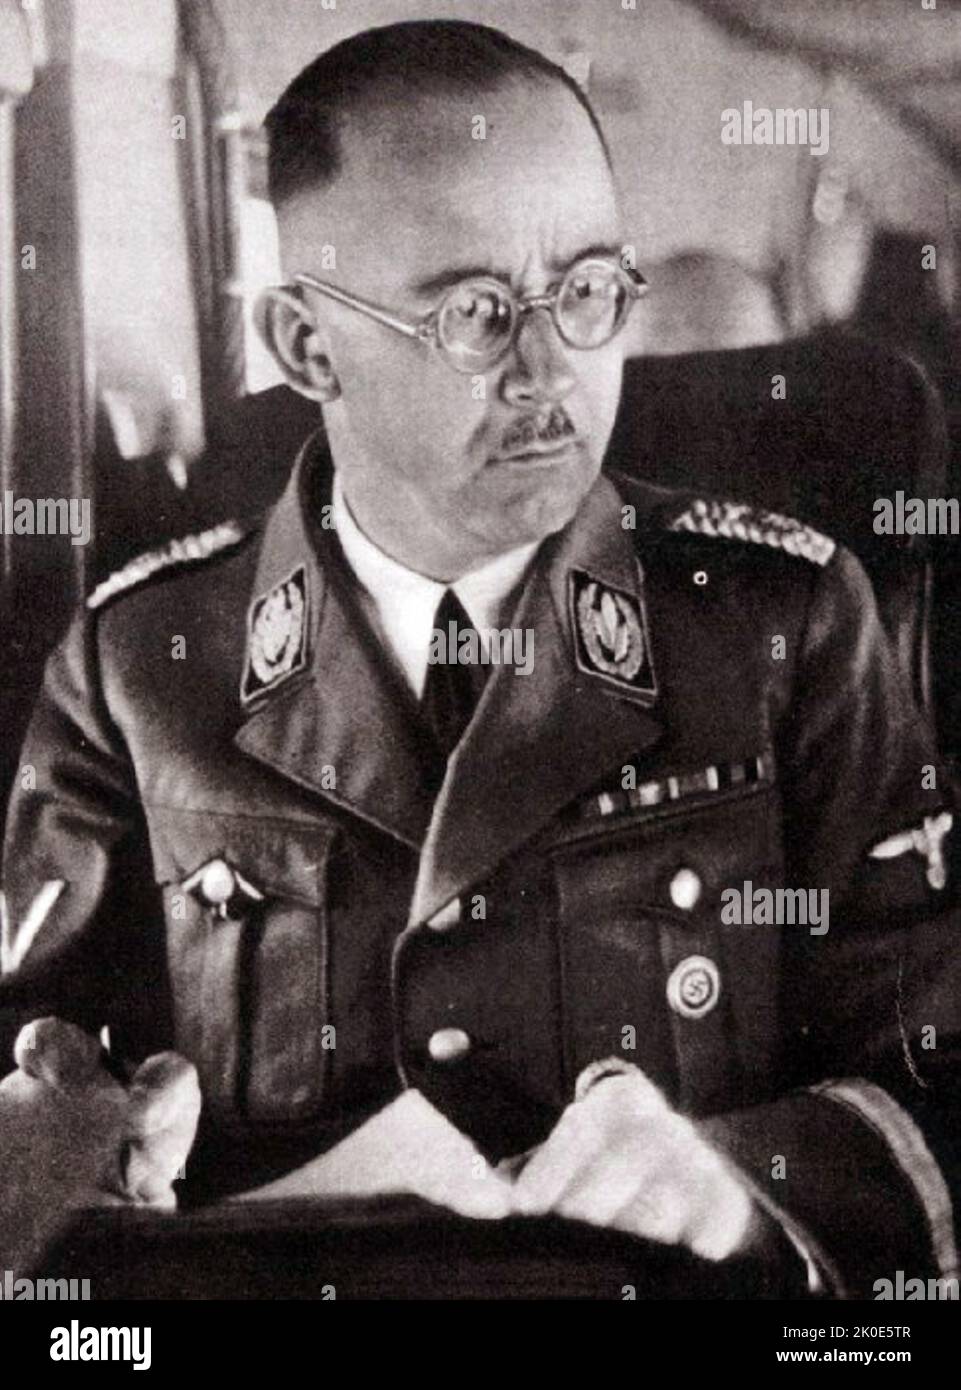 Heinrich Luitpold Himmler (1900 - 1945) Reichsfuhrer del Schutzstaffel (SS), e un membro principale del Partito nazista (NSDAP) della Germania. Himmler era uno degli uomini più potenti della Germania nazista e un architetto principale dell'Olocausto. Foto Stock